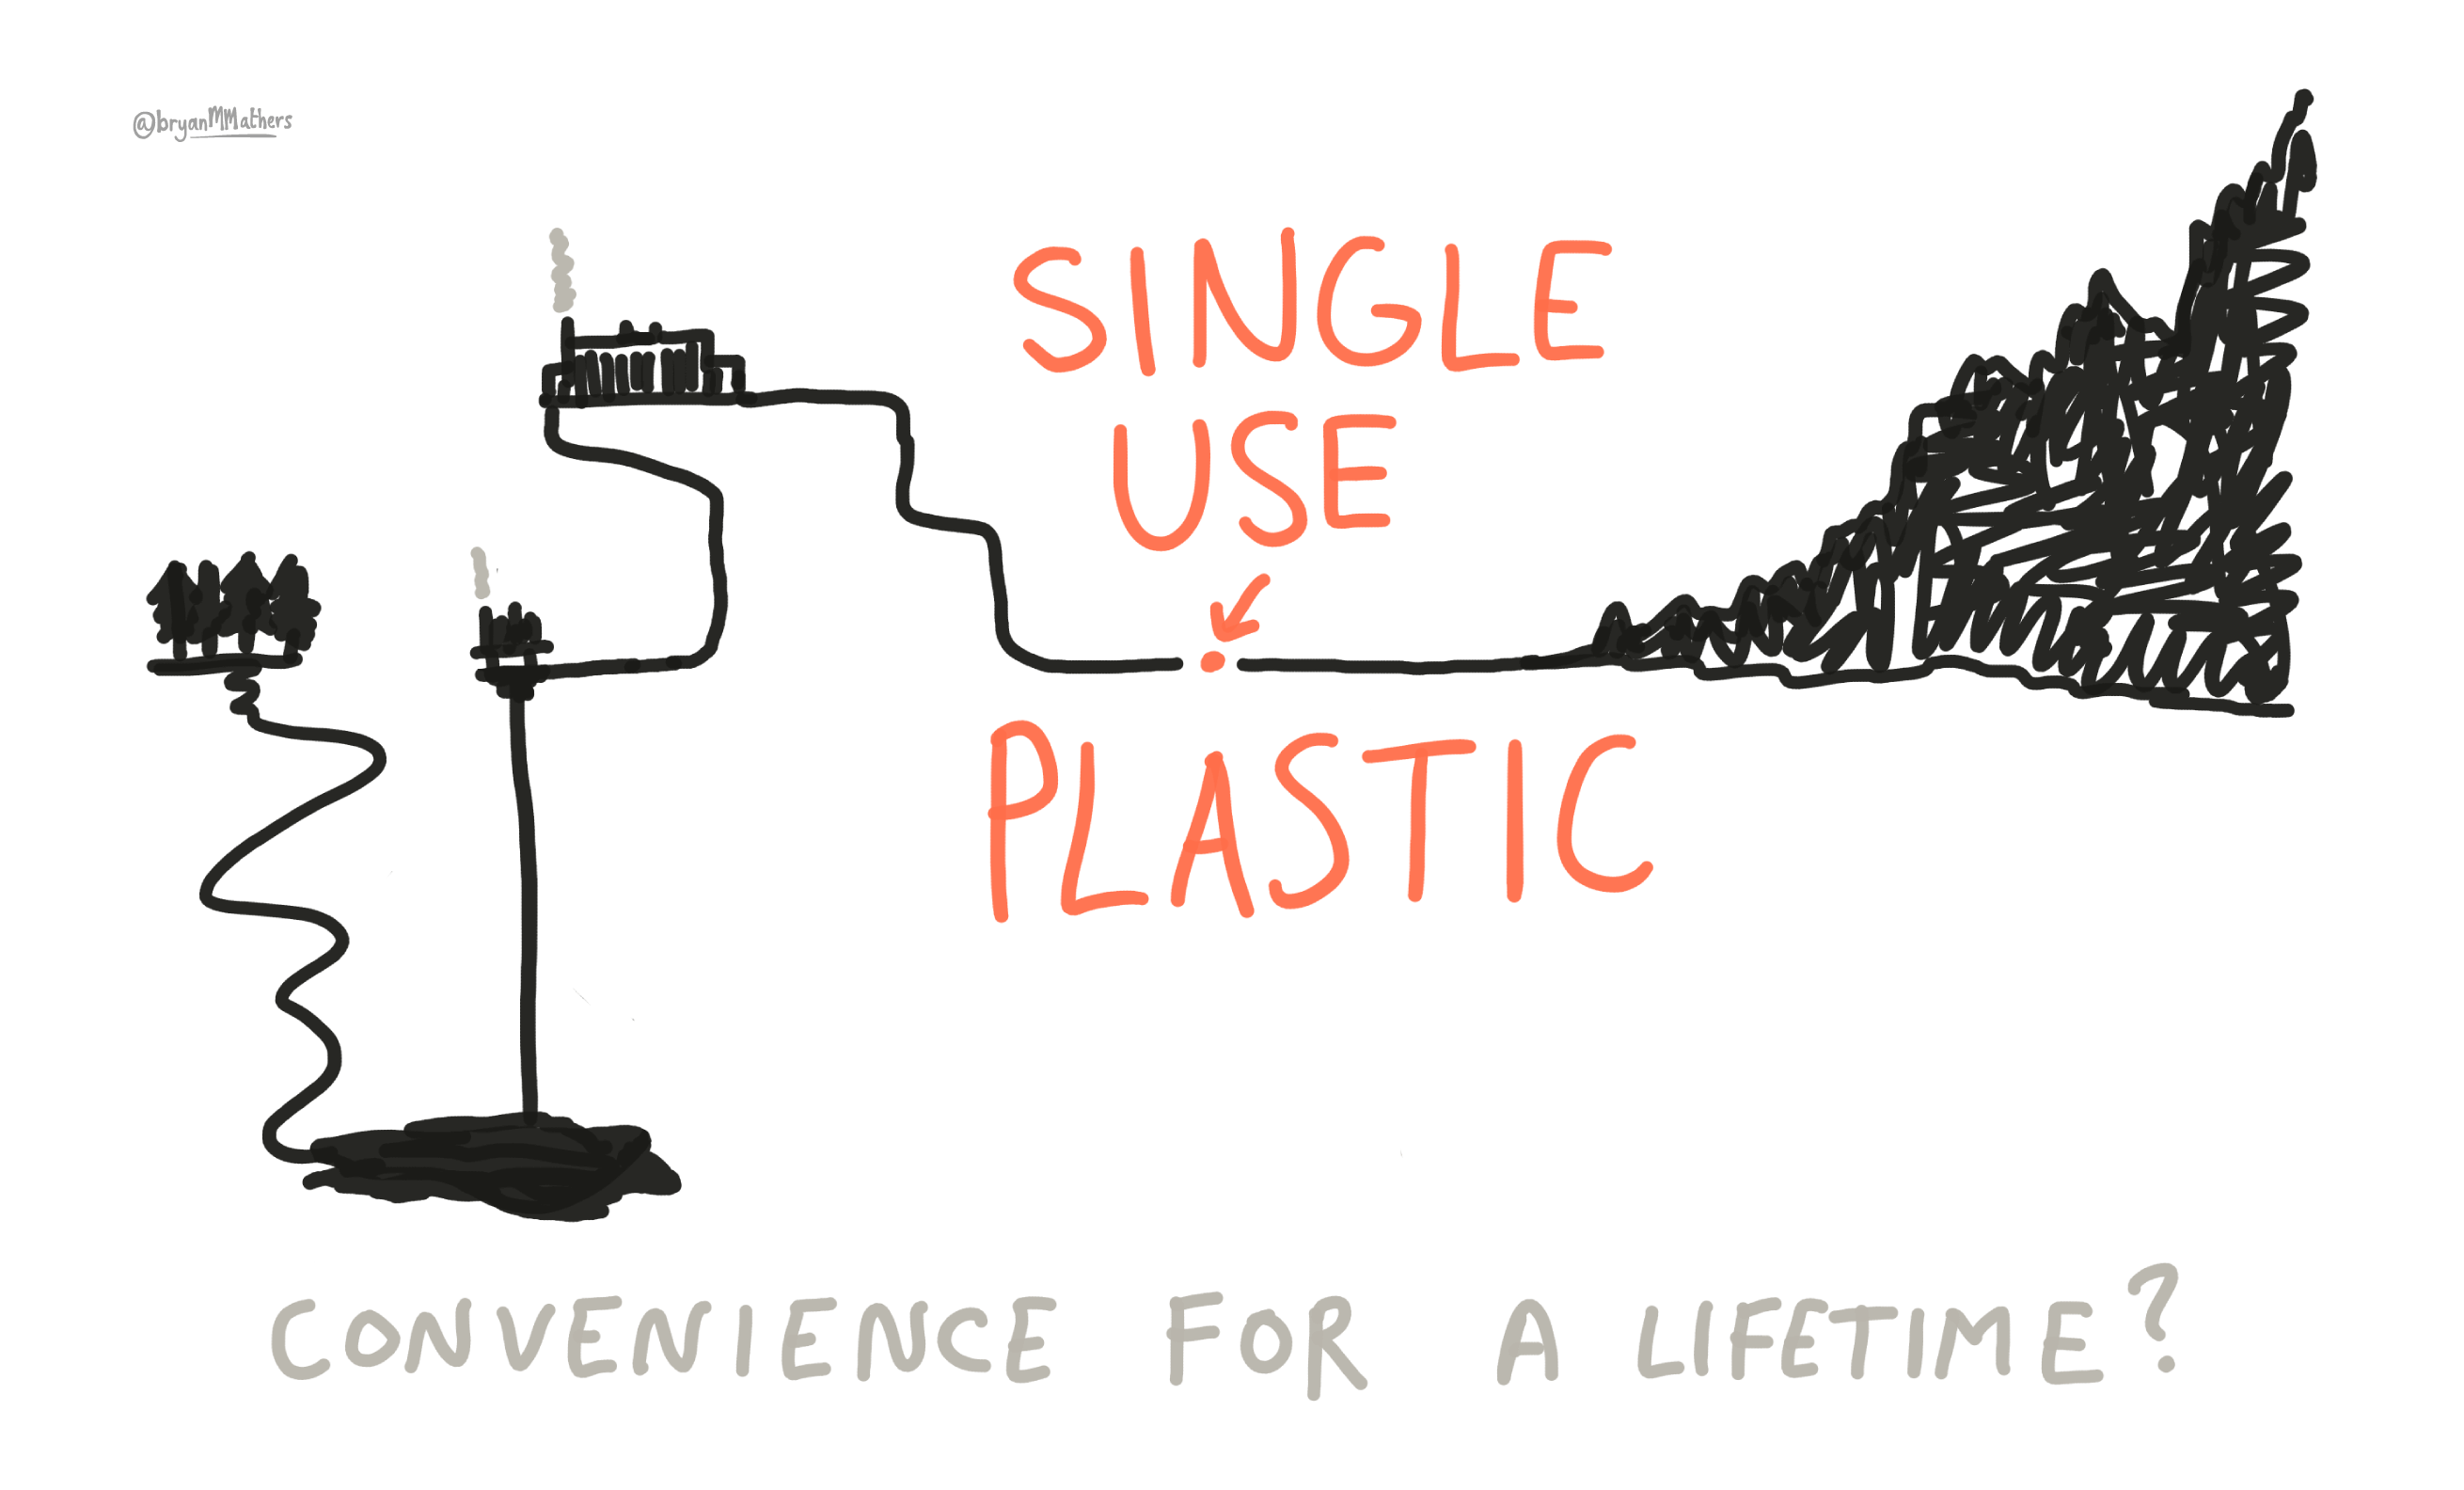 Single Use Plastic